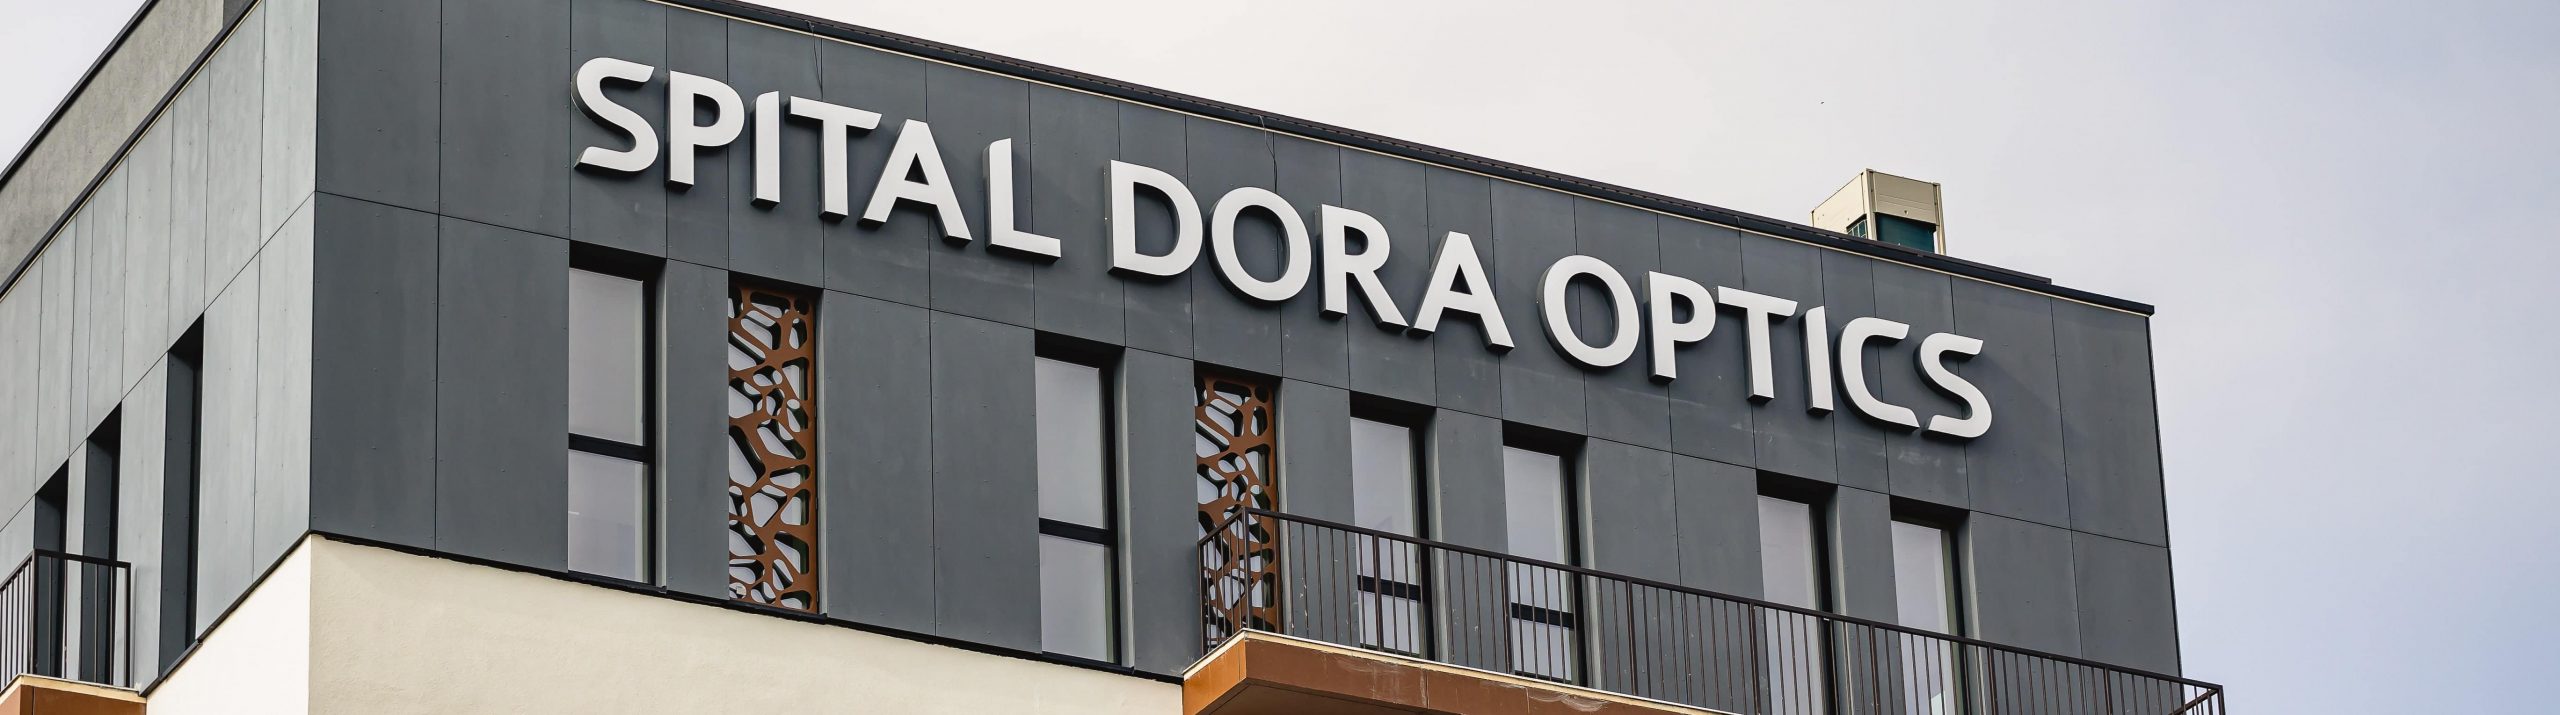 Rețeaua Dora Optics a inaugurat un spital privat în Târgu Mureș, conform standardelor internaționale